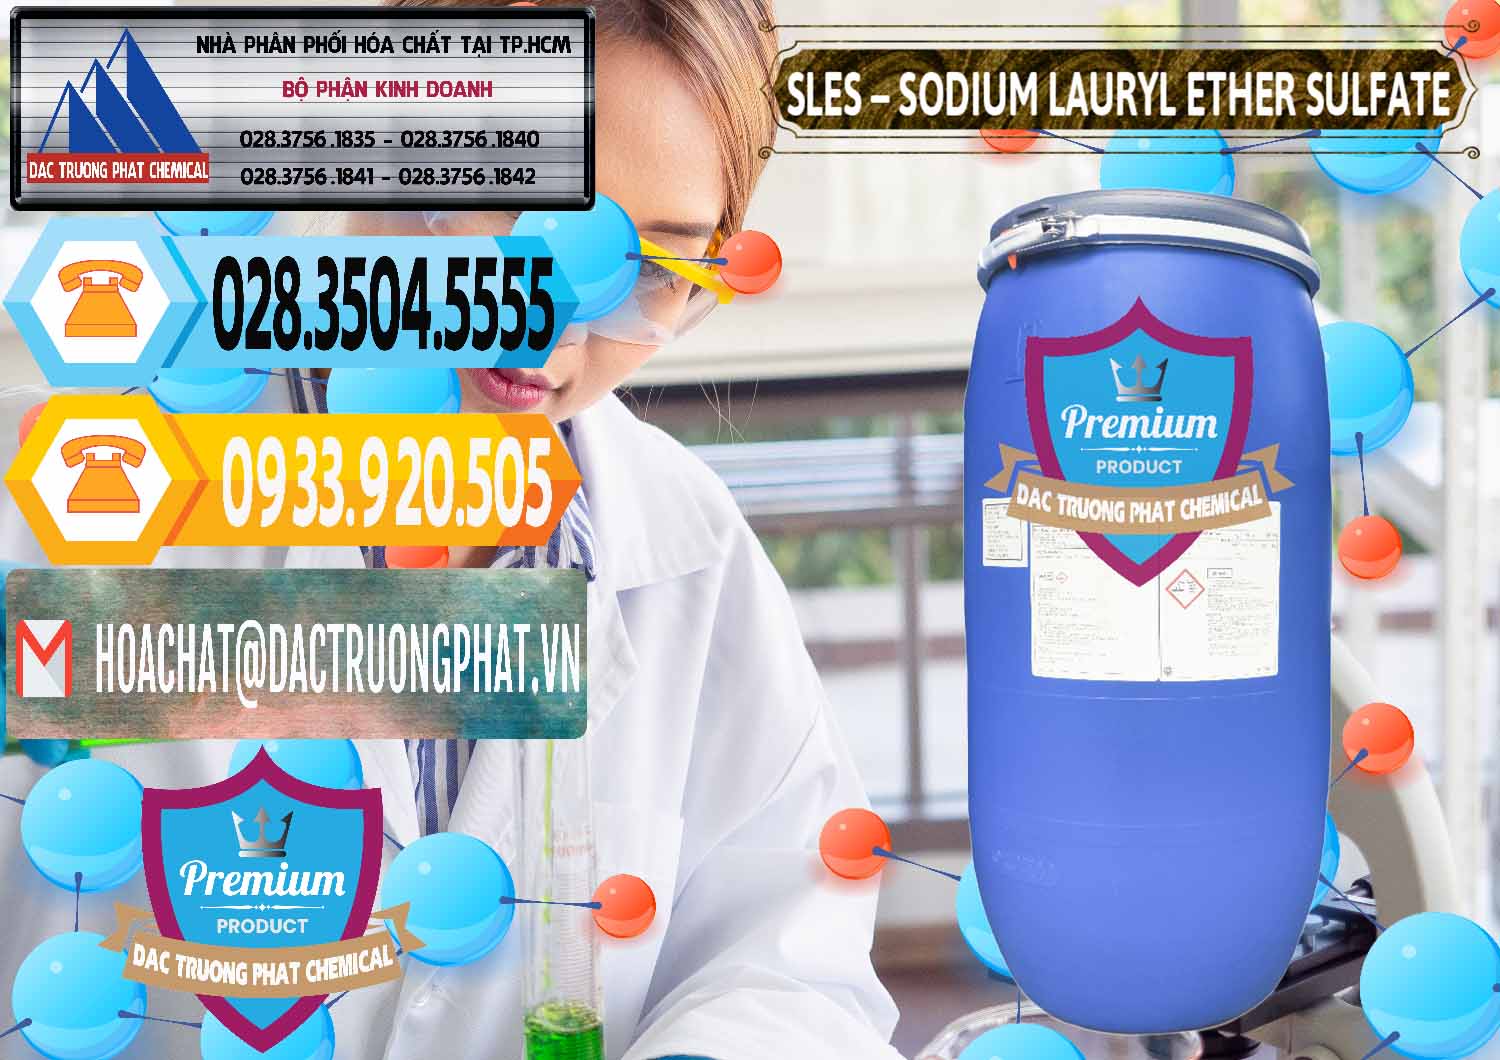 Cty chuyên kinh doanh - bán Chất Tạo Bọt Sles - Sodium Lauryl Ether Sulphate Kao Indonesia - 0046 - Phân phối ( cung cấp ) hóa chất tại TP.HCM - hoachattayrua.net